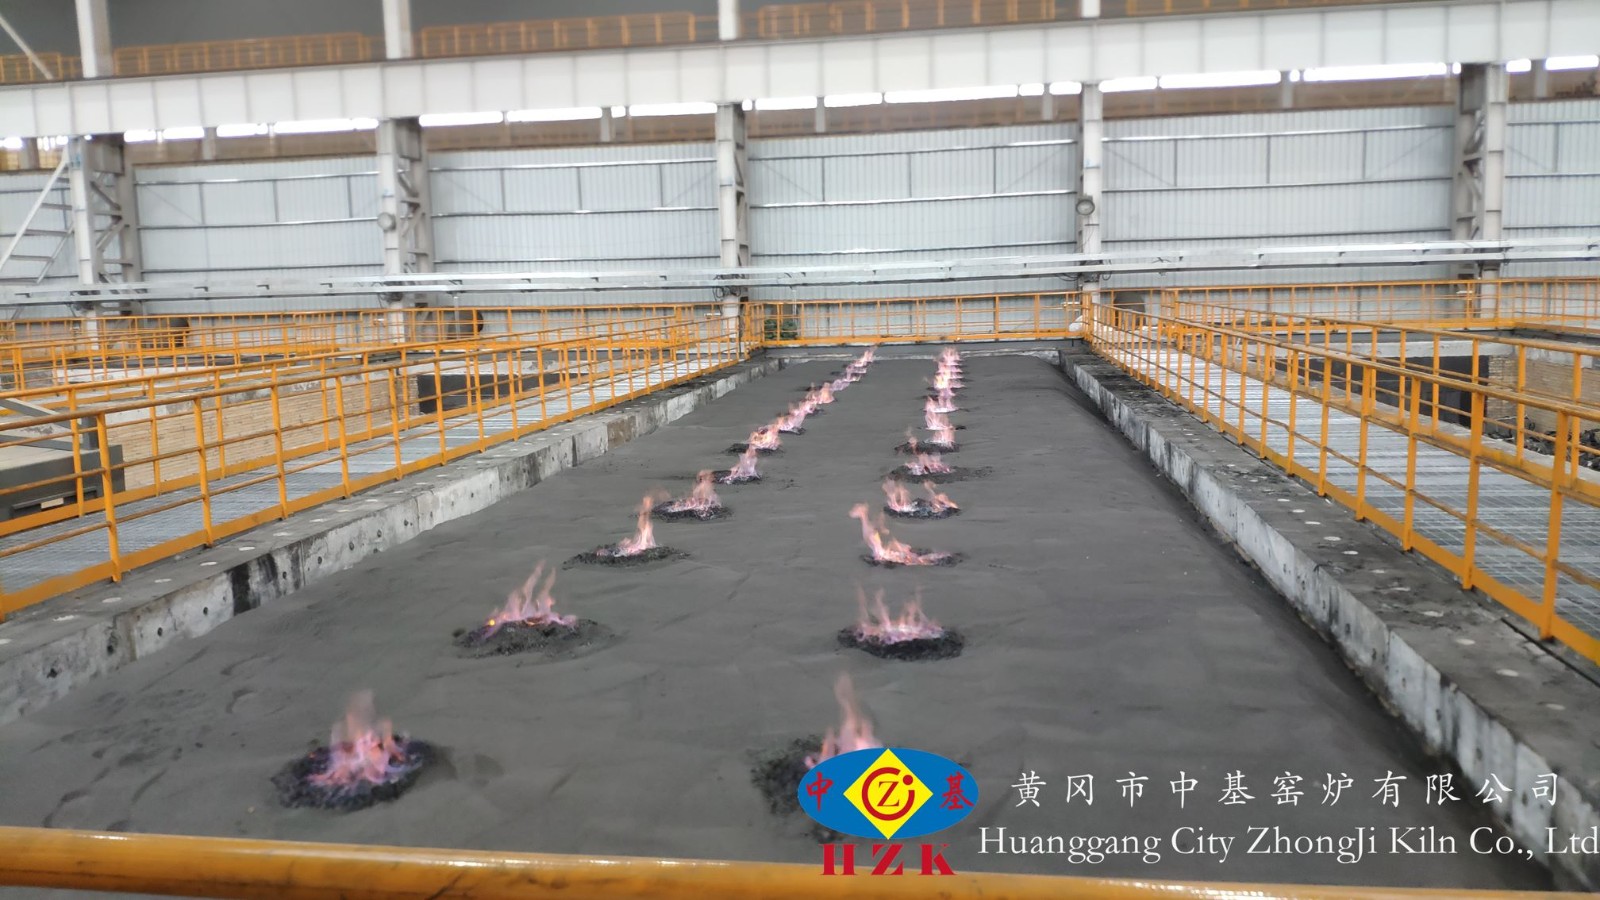 兰州宝航公司年产10万吨负极材料项目石墨化炉建筑与安装工程顺利完工